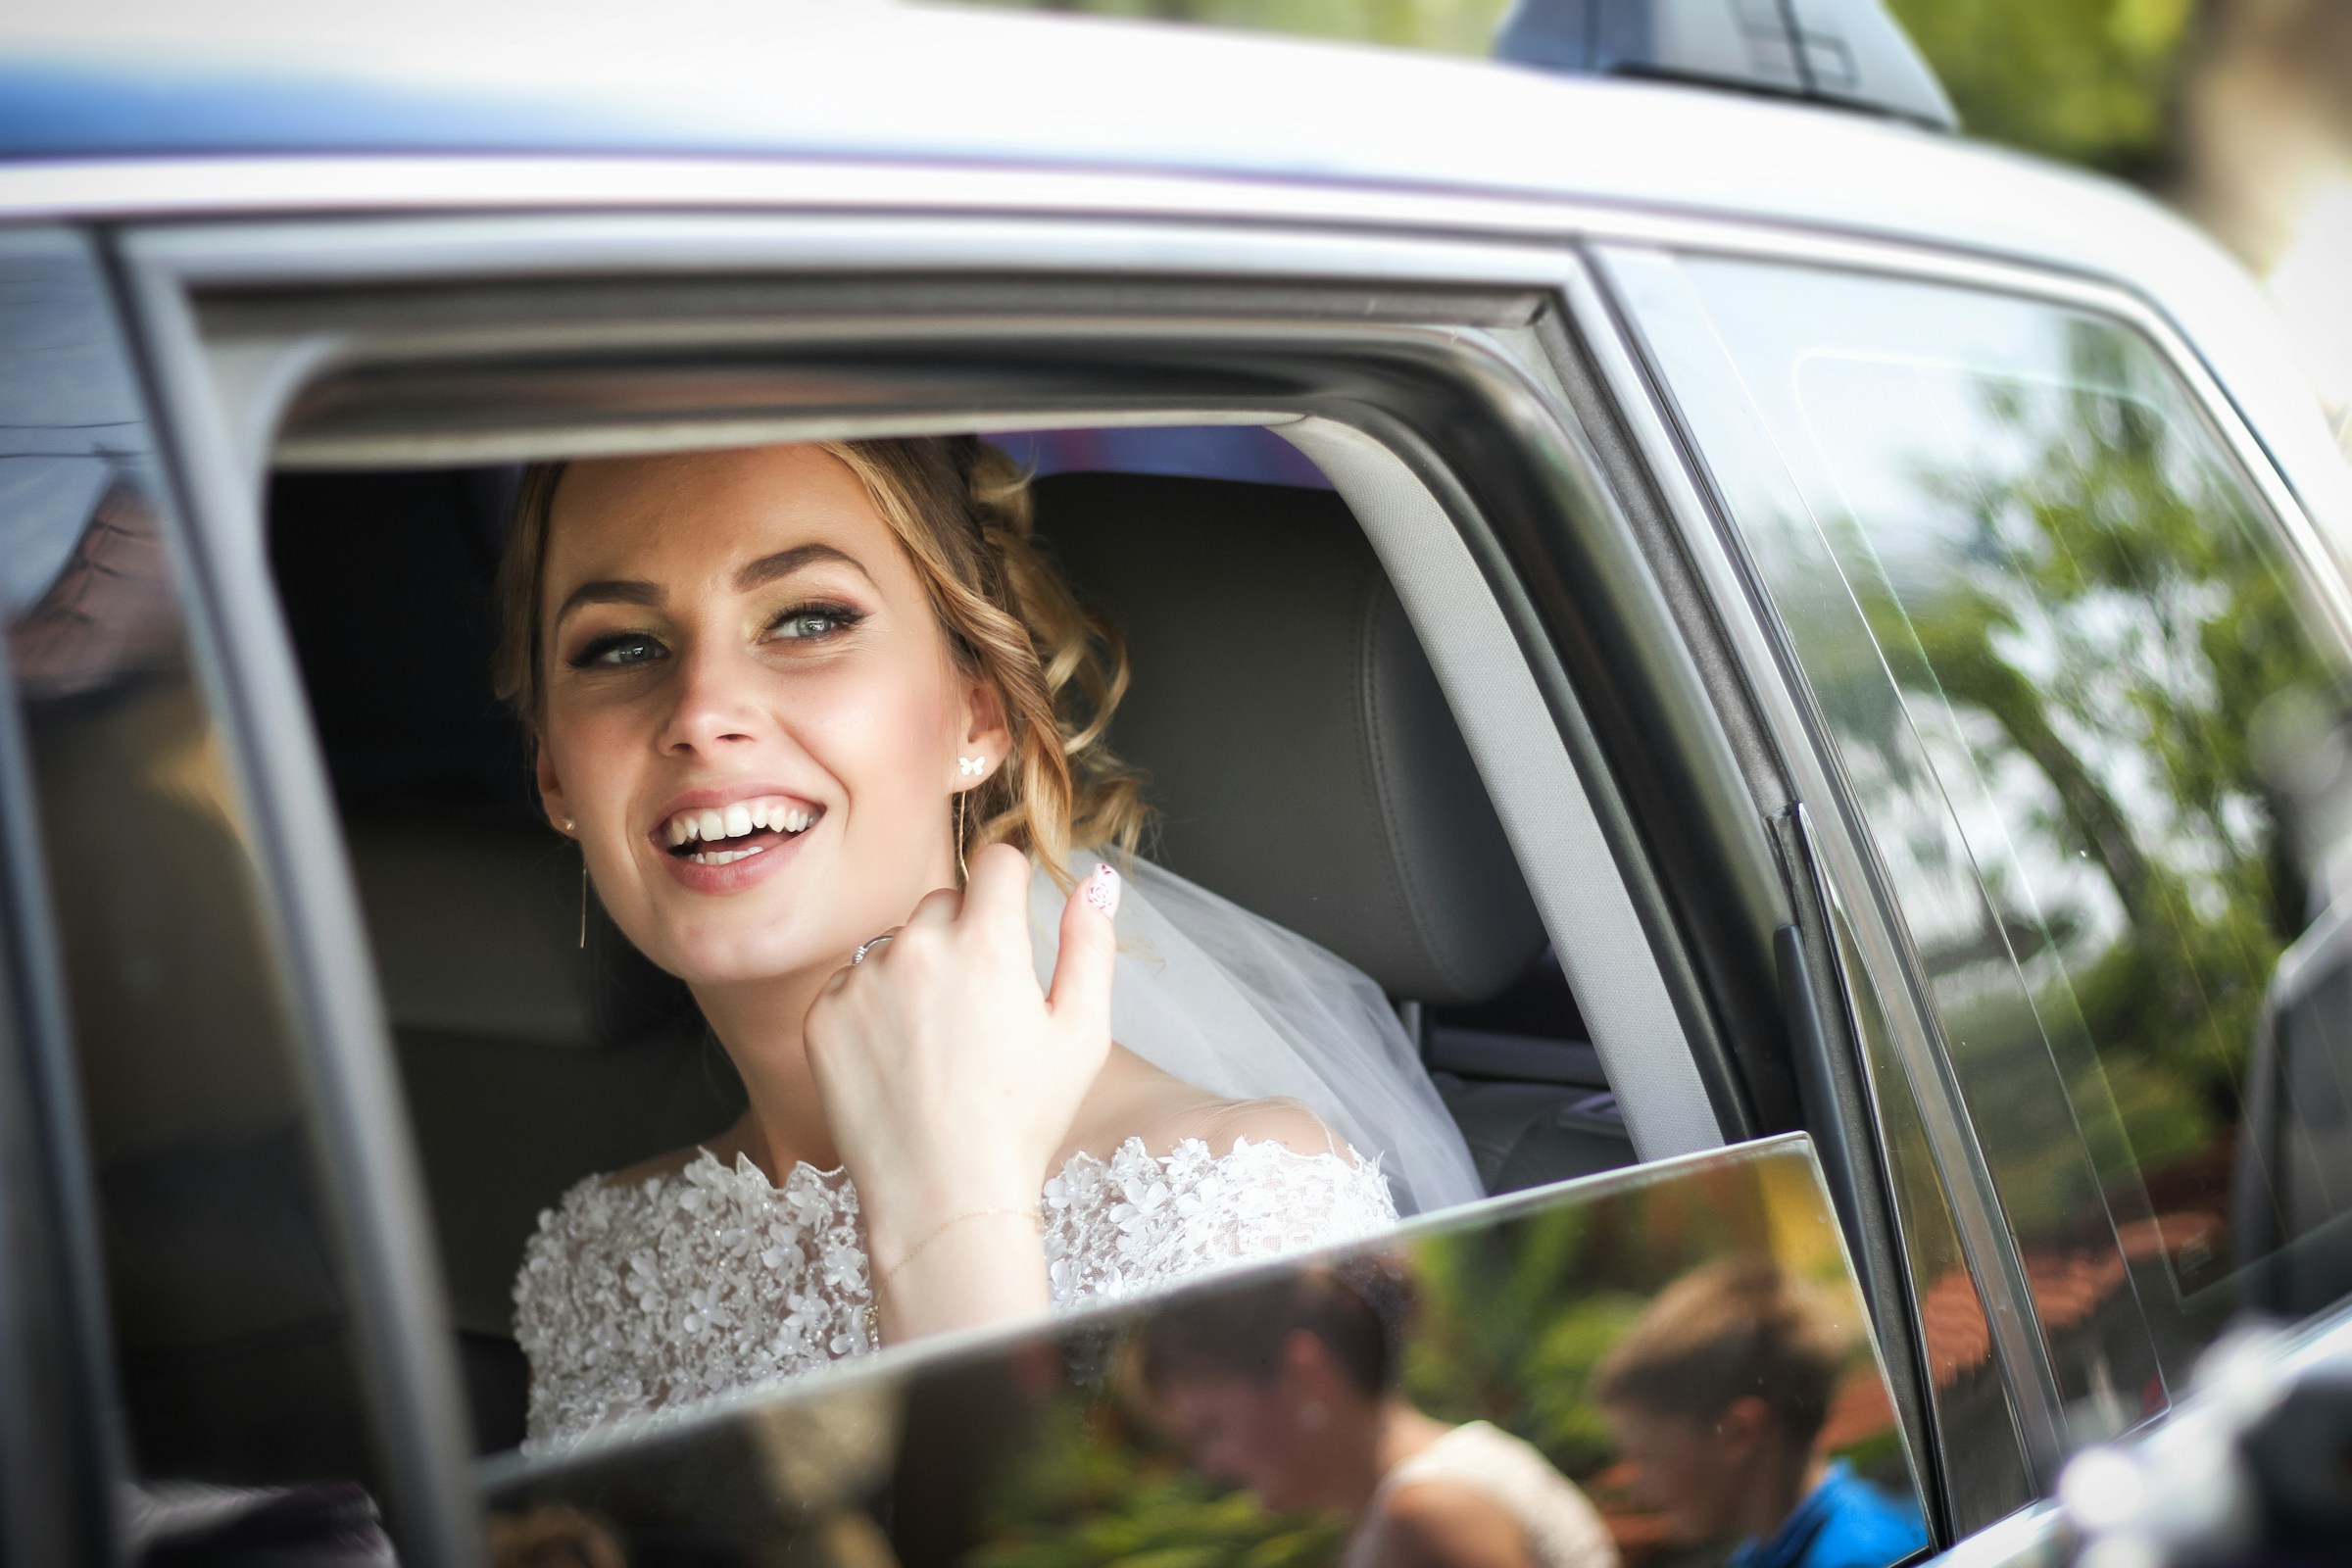 Una novia en un Automóvil mirando al exterior y sonriendo | Fuente: Unsplash